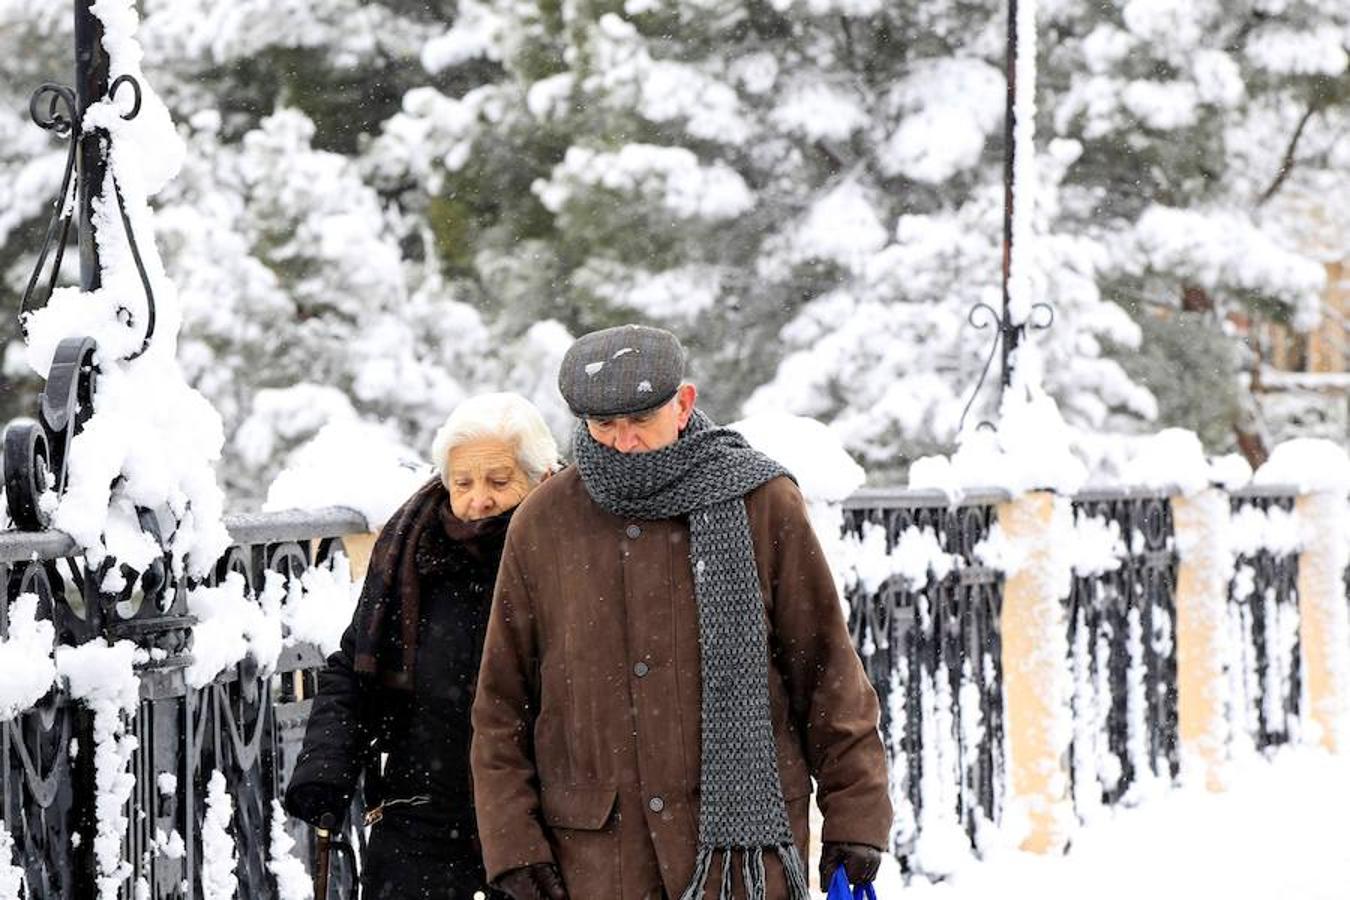 Frío y nieve en la ciudad de Teruel, donde la Agencia Estatal de Meteorología (Aemet) mantiene activada la alerta amarilla por nevadas en Albarracín y Jiloca, Gúdar y Maestrazgo, por nevadas de hasta 10 centímetros de espesor, en cotas de 400-600 metros, y de 4 centímetros en el Bajo Aragón, en altitudes a partir de 600-800 metros. 